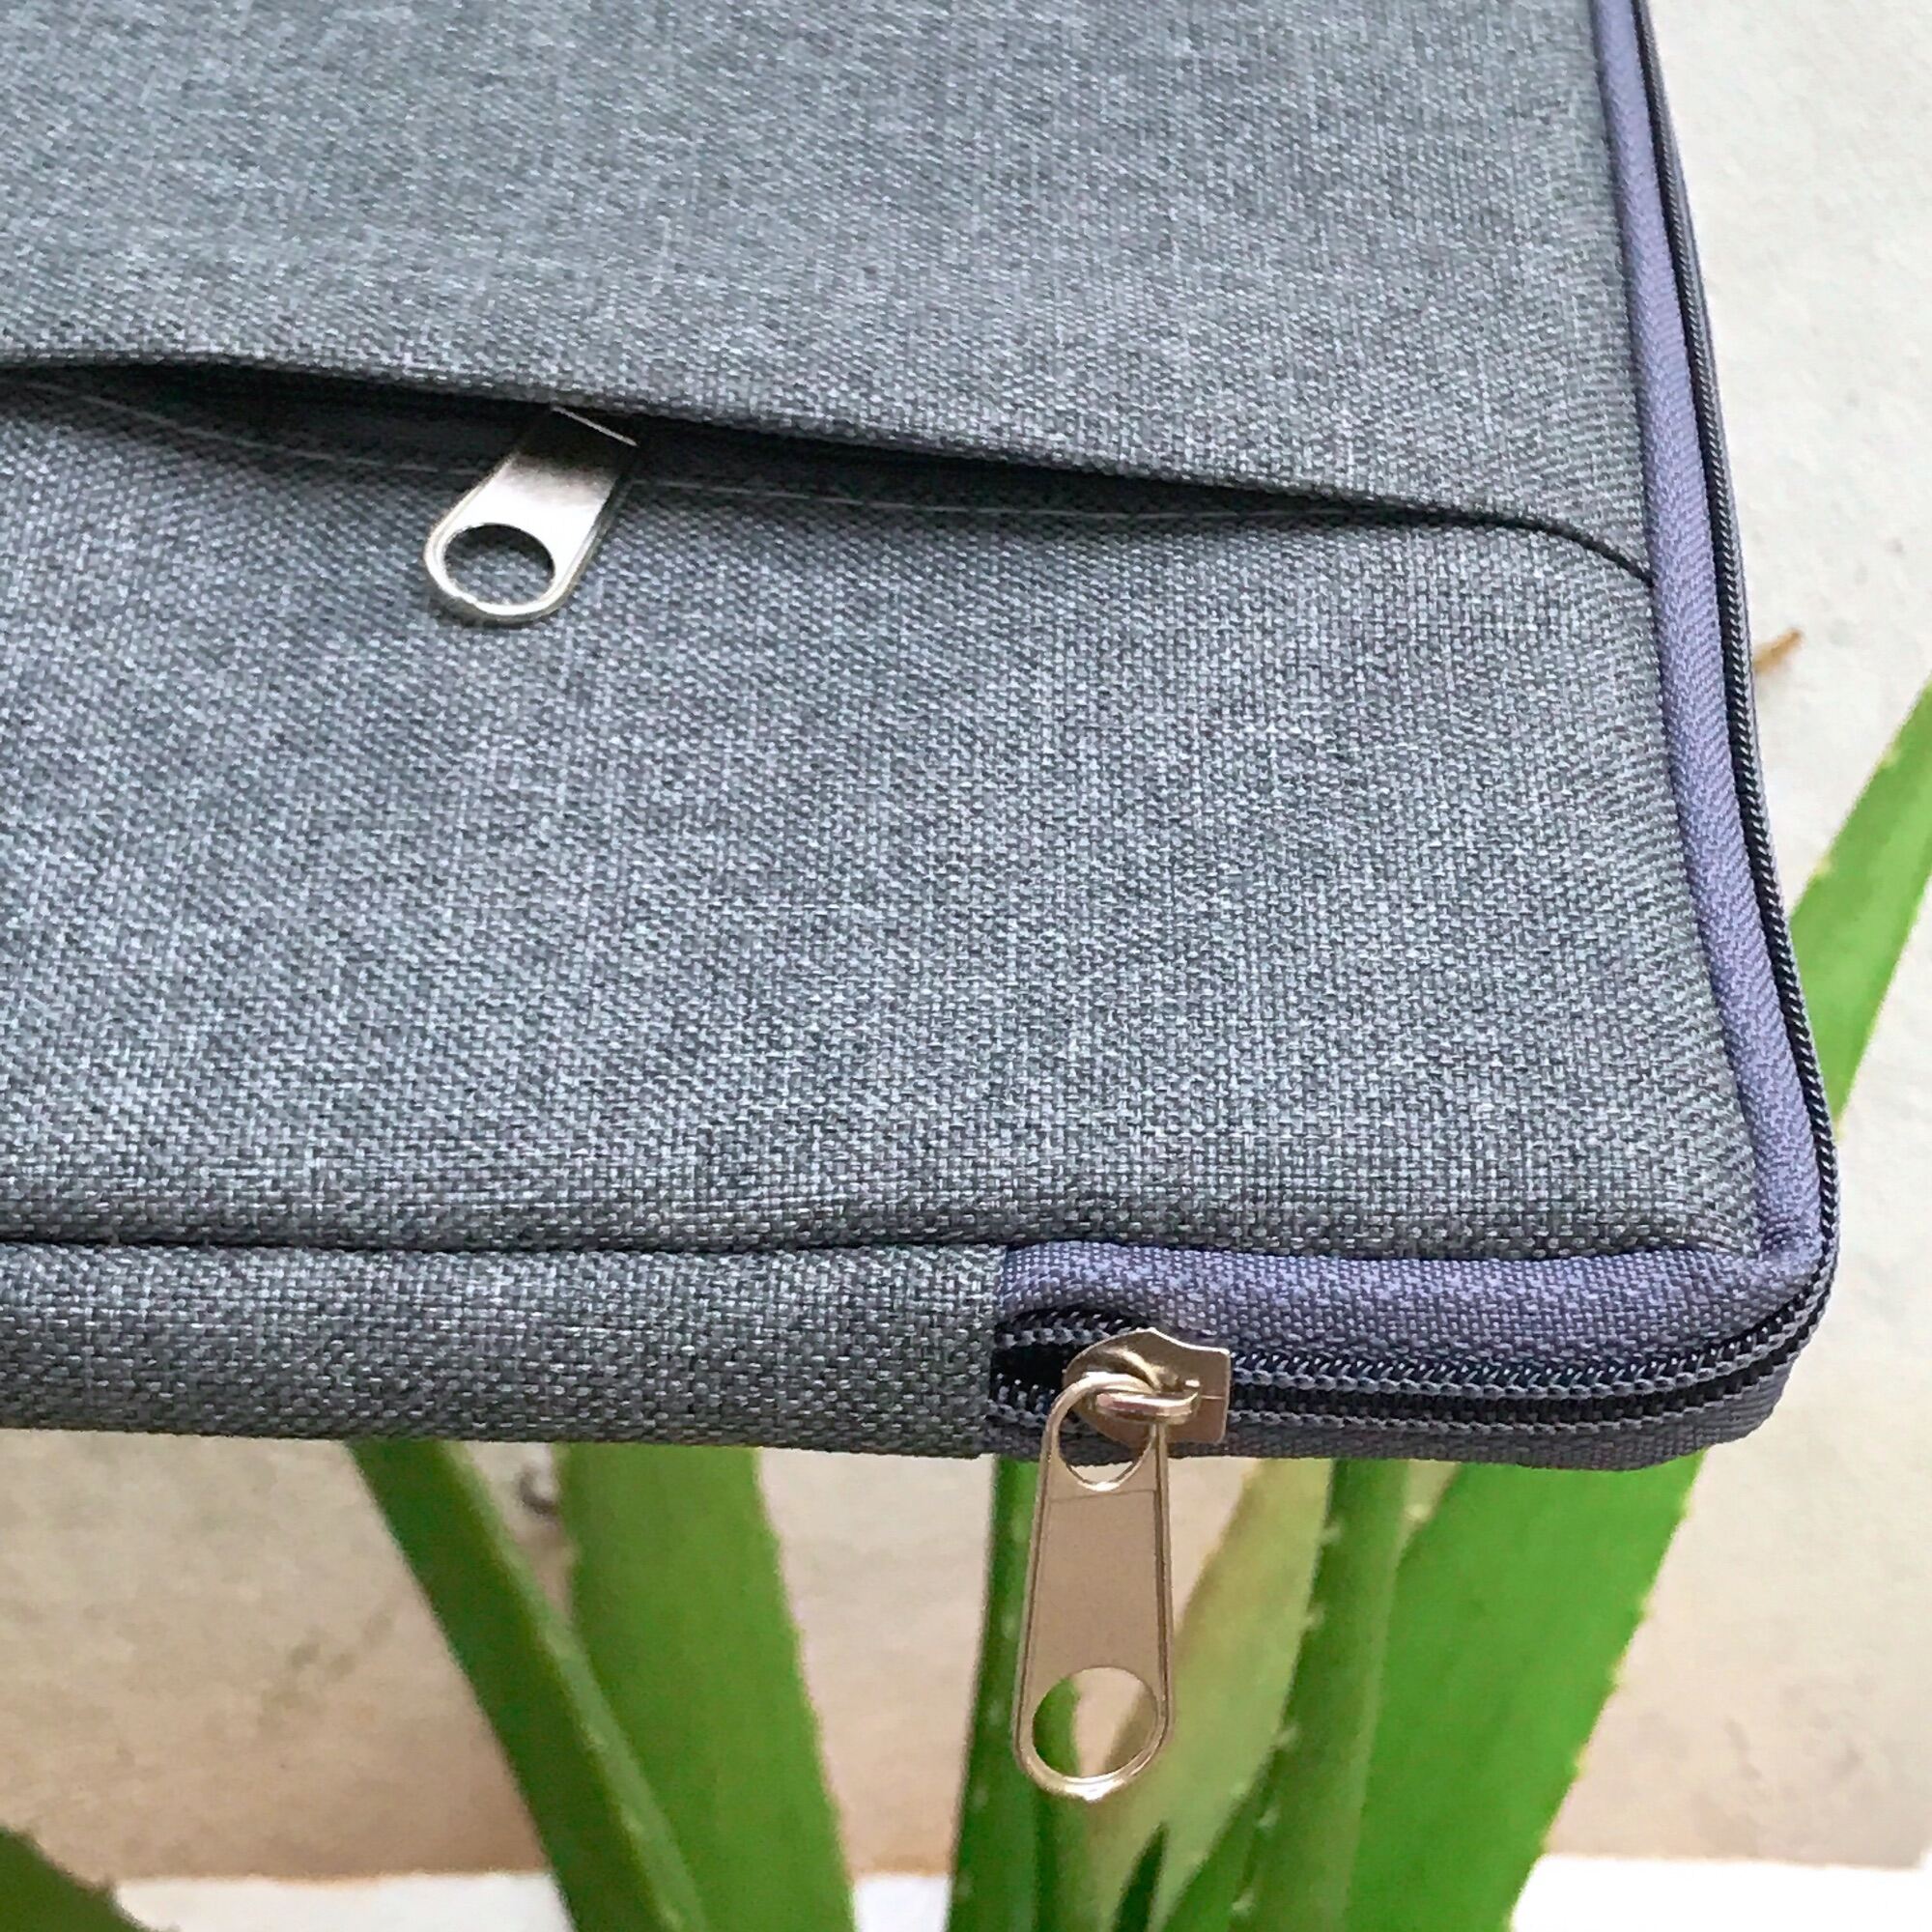 Túi Chống Sốc  Đựng Laptop 13 inch Vải Bền Đẹp Dày Chất Lượng